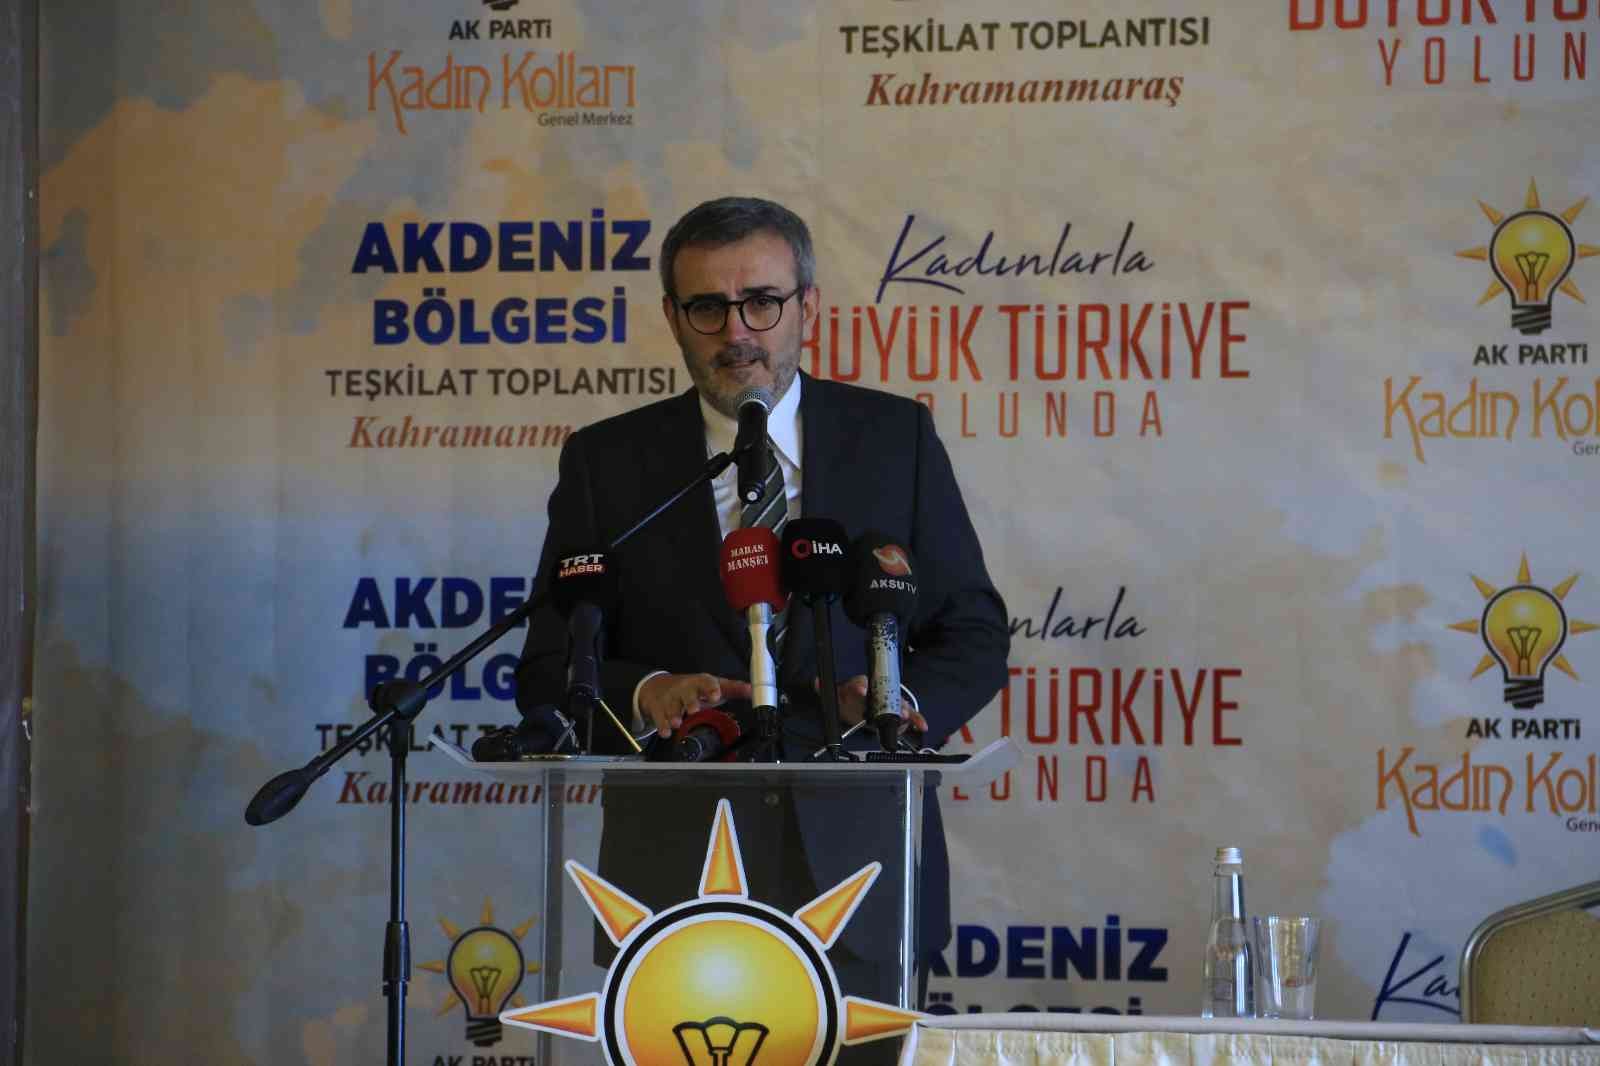 AK Partili Ünal: “Cumhurbaşkanı Erdoğan küresel ölçekte büyük bir kavganın içindedir” #kahramanmaras